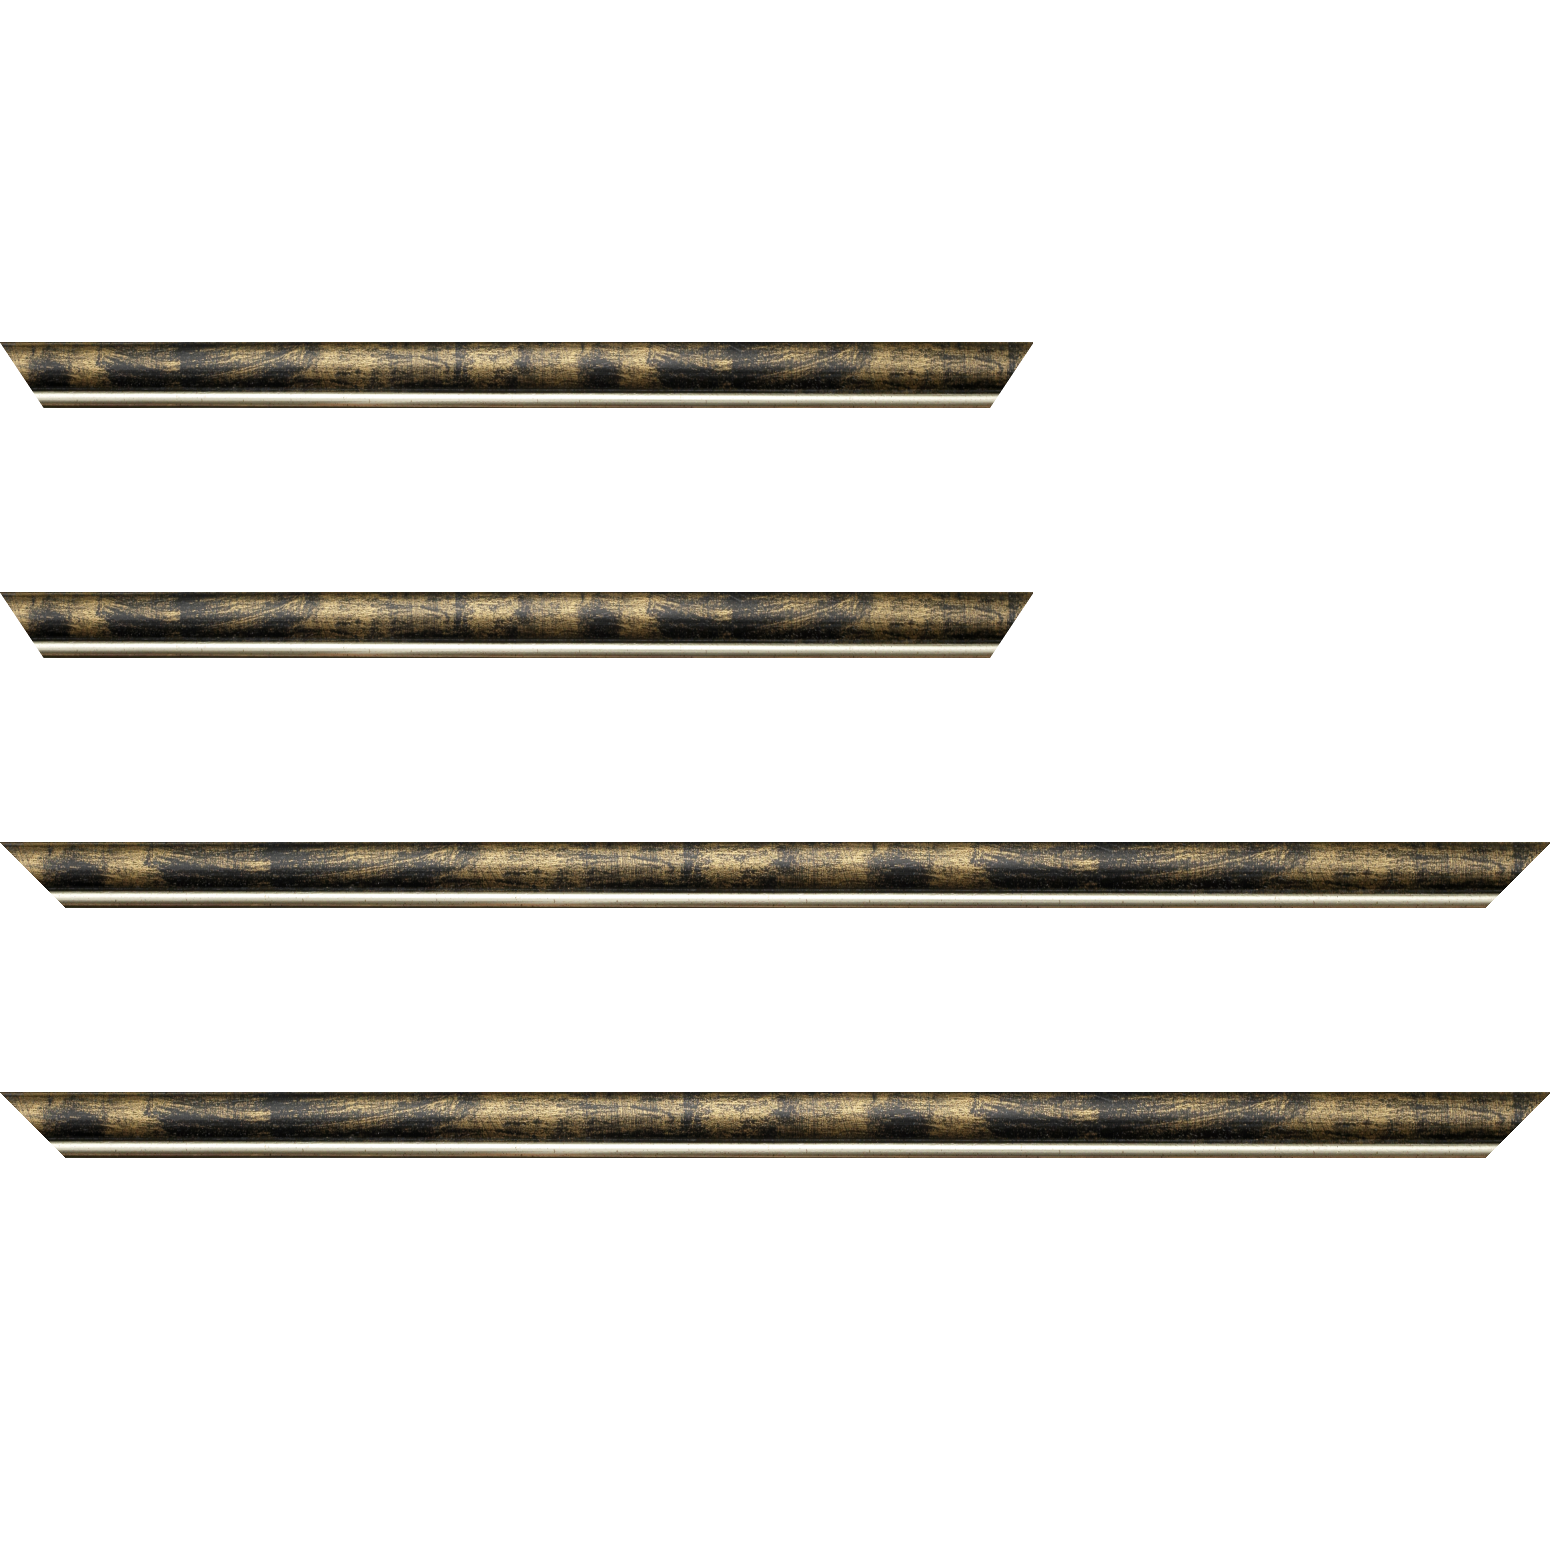 Baguette bois profil arrondi largeur 2.1cm  couleur noir fond or filet argent chaud - 18x24